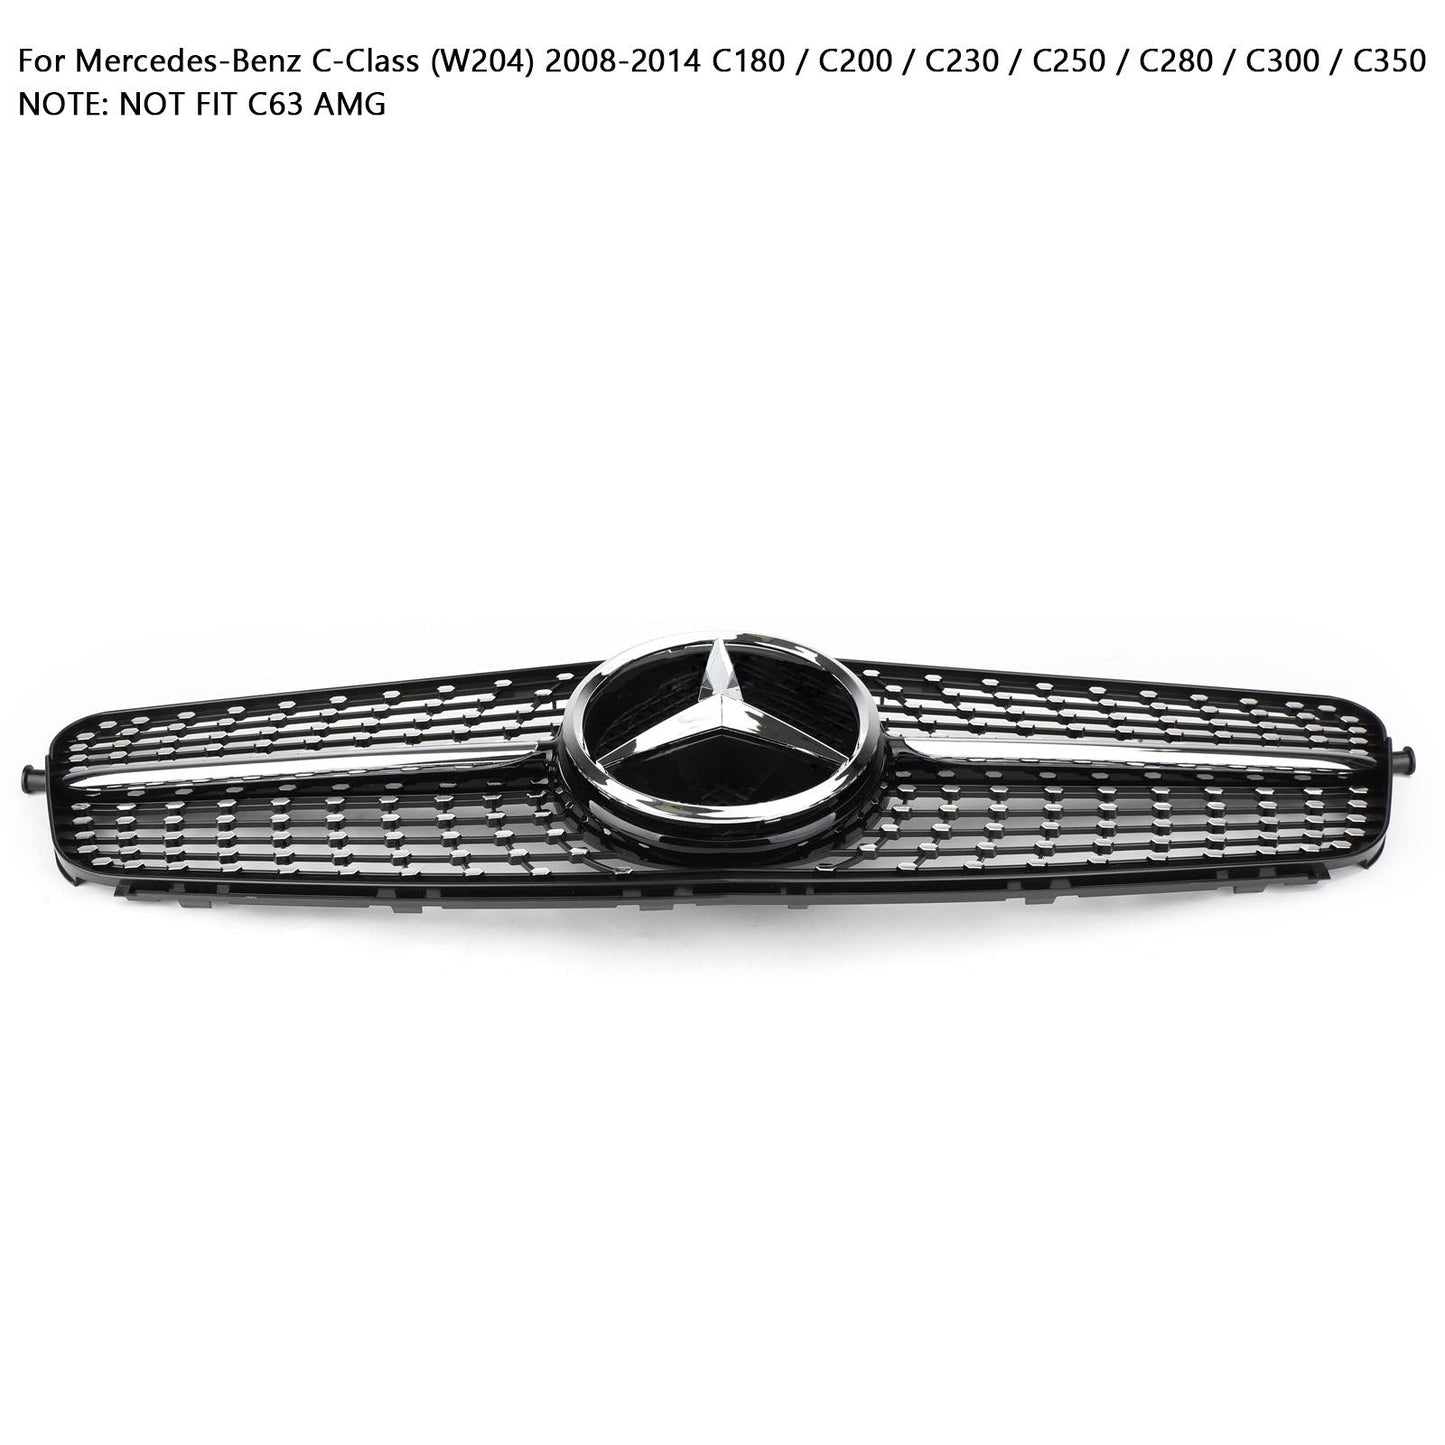 W204 C-Class 2008-2014 Mercedes Benz C200 C300 Car Grille Diamond Black Chrome Front Grille Grill